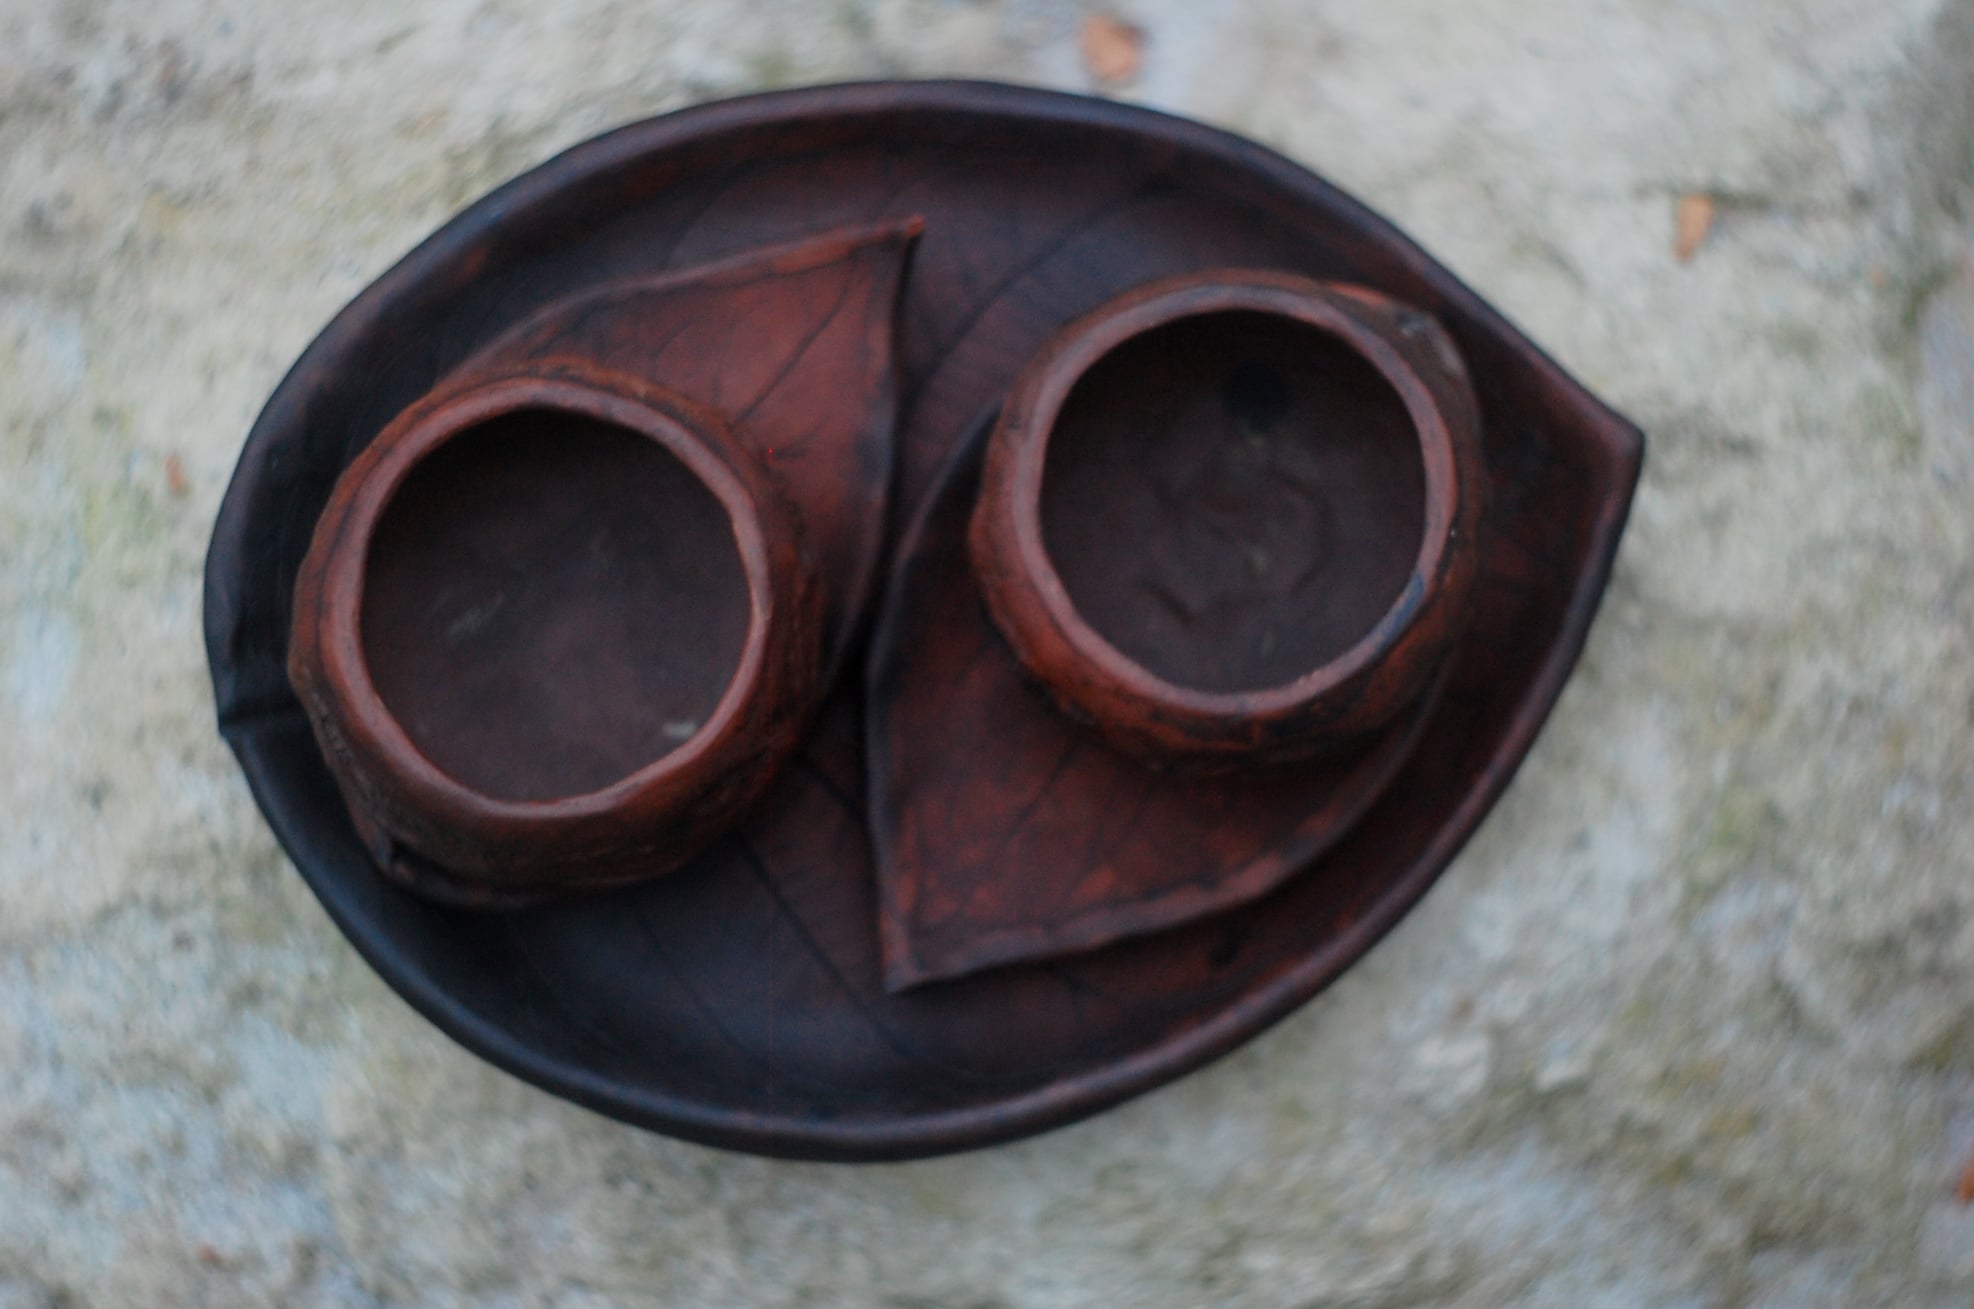 Handmade pottery mug set of 2 mugs "Walnut" w/  2 leaf shaped saucers